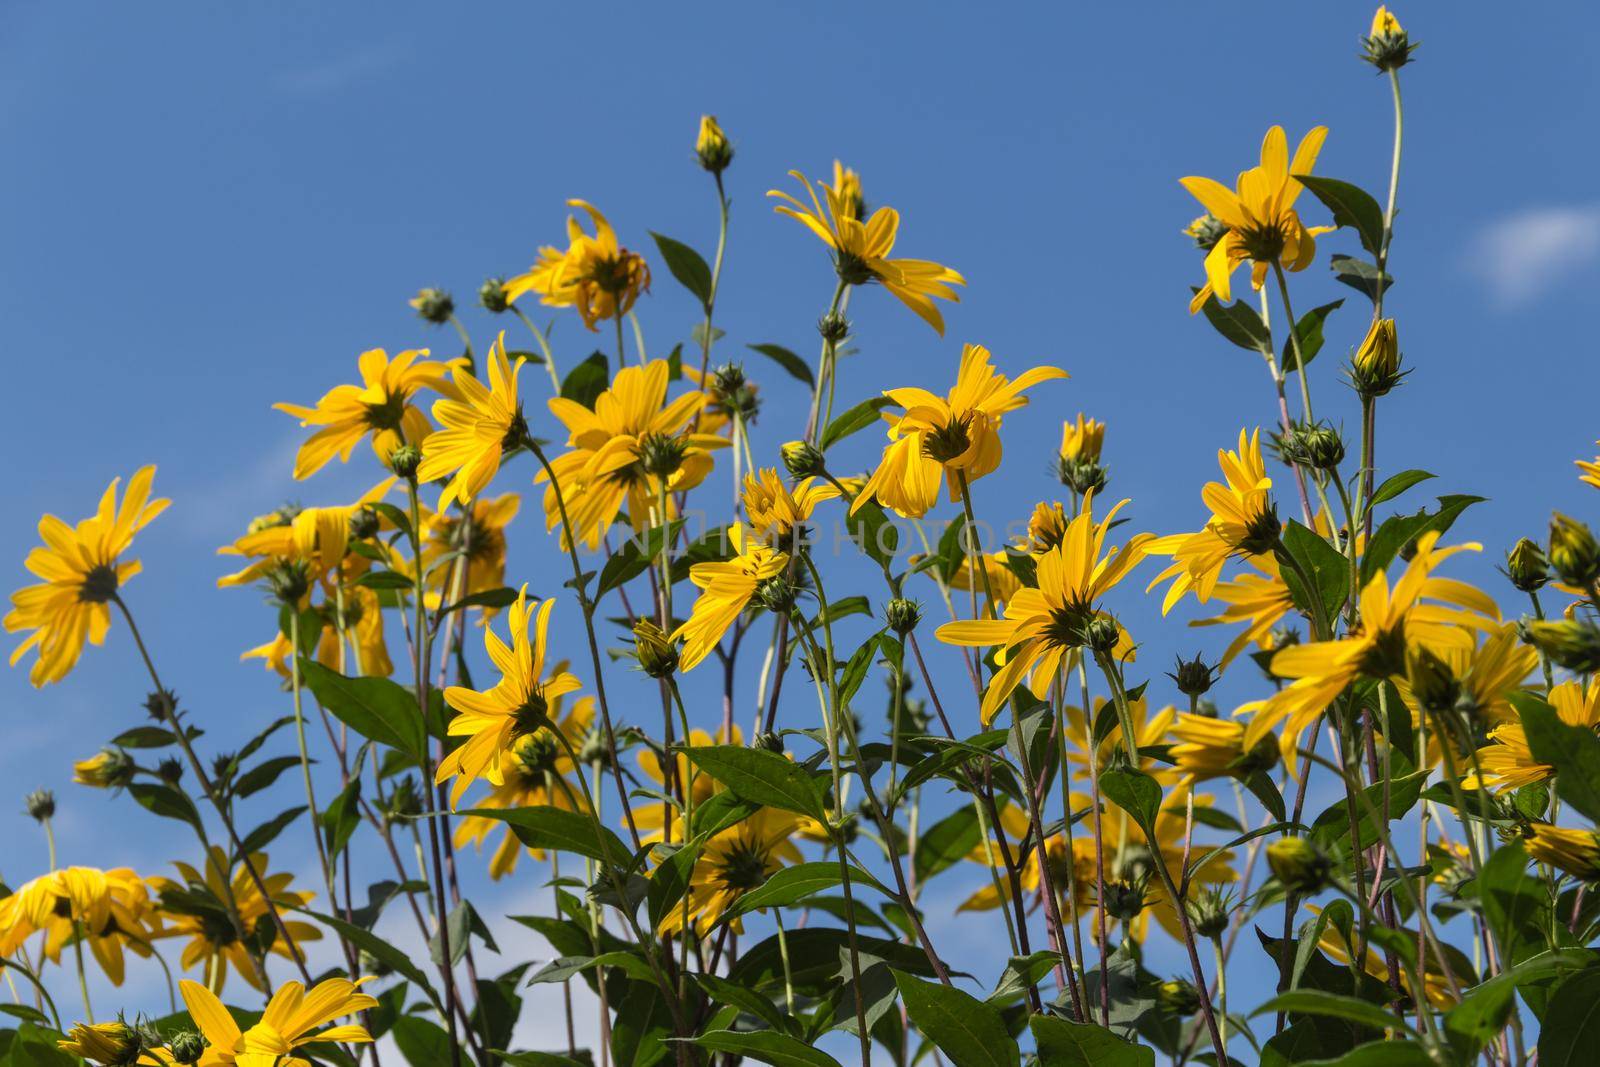 Yellow flowers of the garden sunflower, Helianthus tuberosus or Jerusalem artichoke by GabrielaBertolini